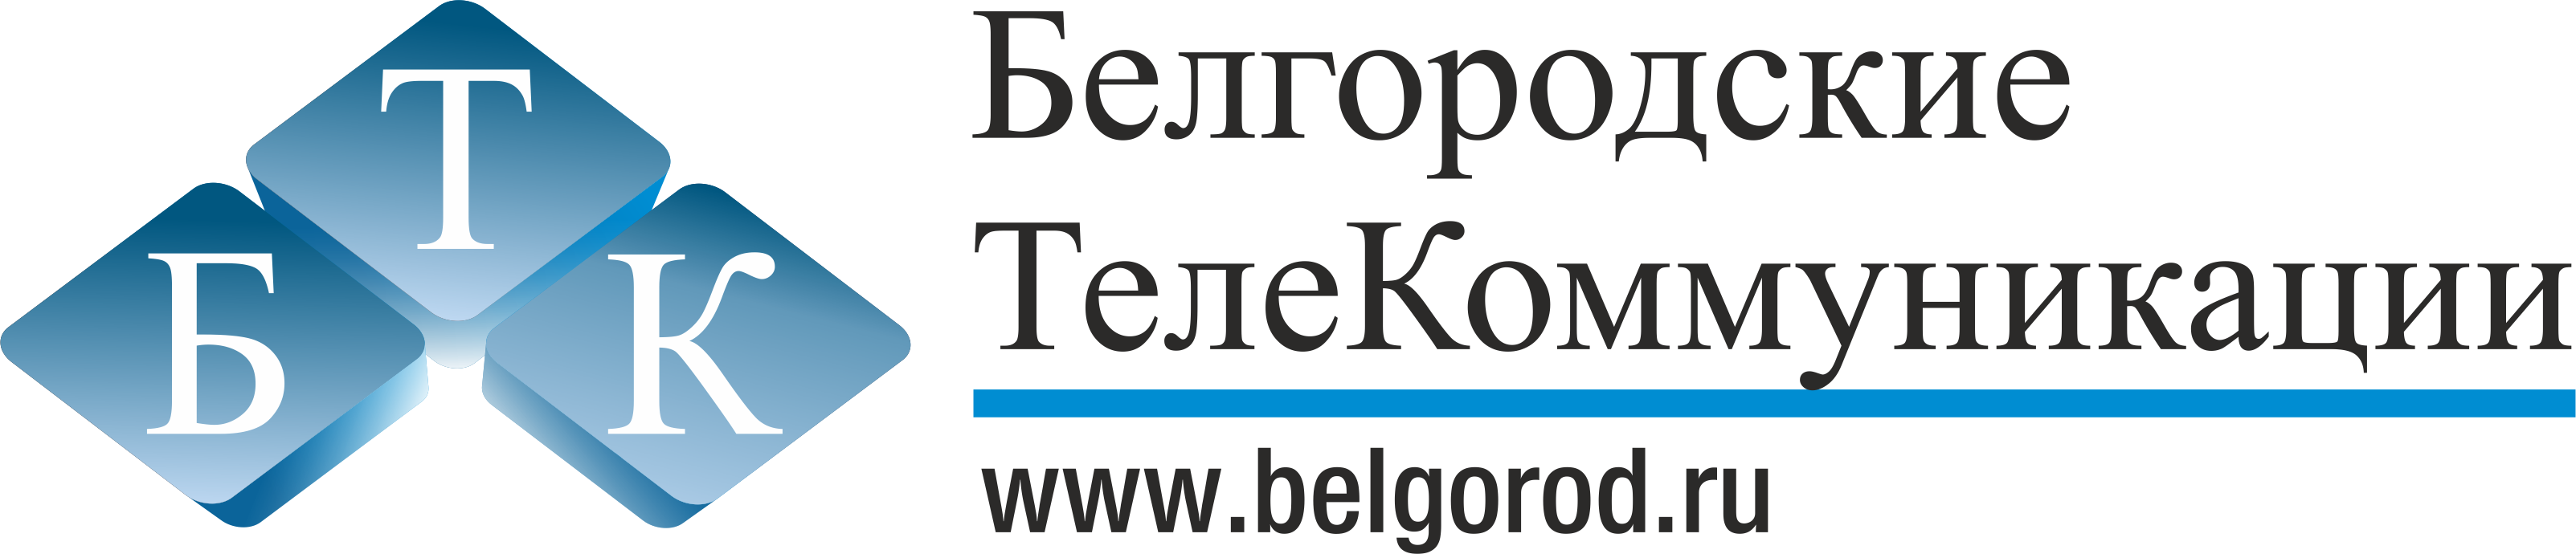 Белгородские Телекоммуникации, интернет провайдер, оператор связи